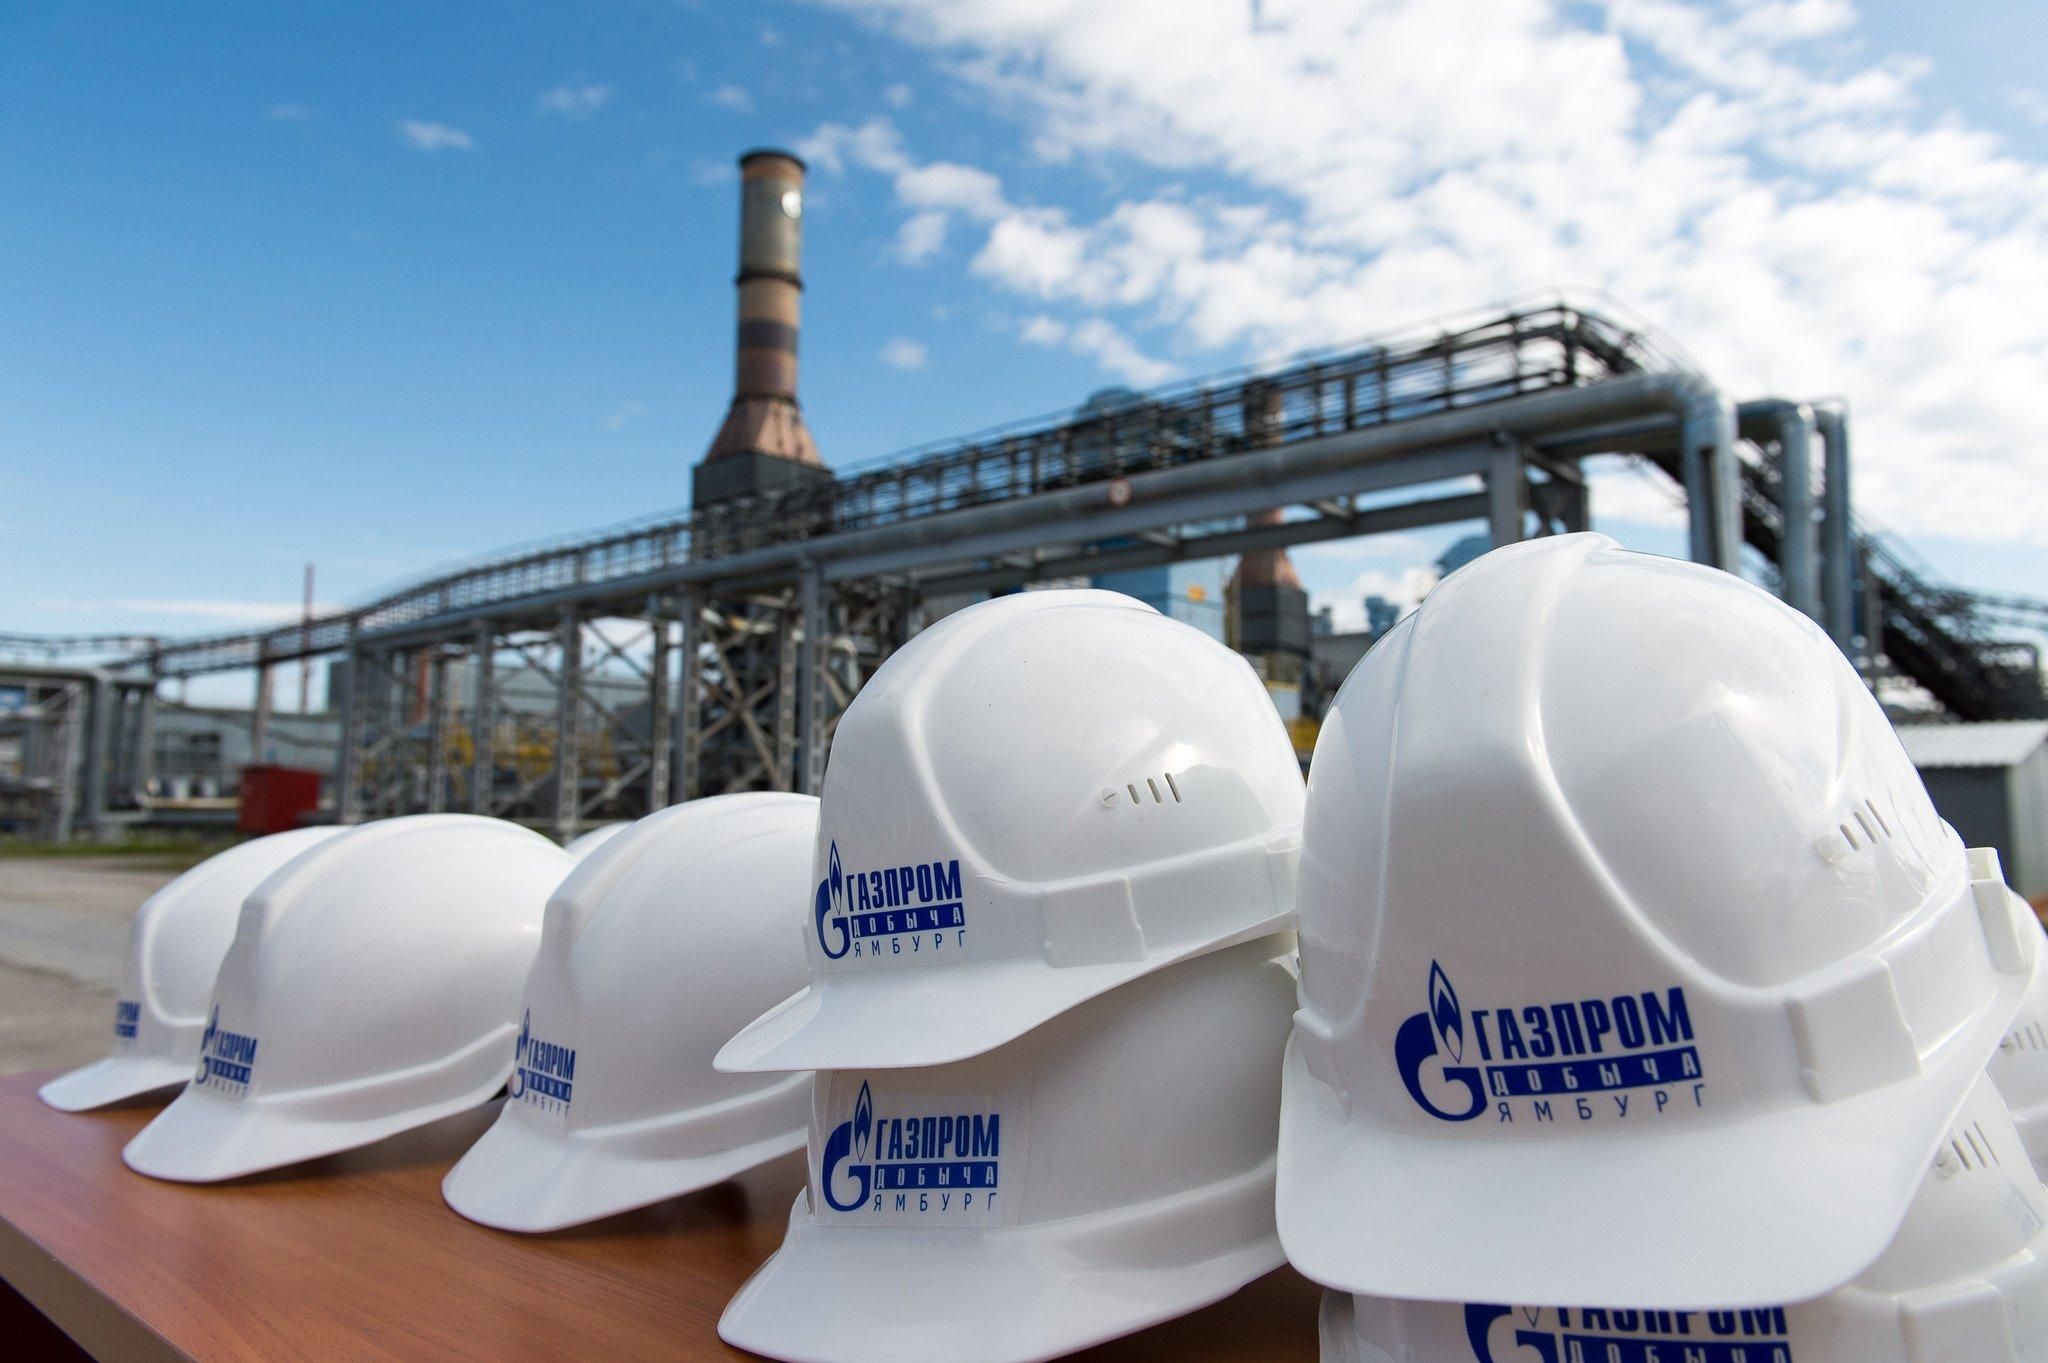 С 1 на 17 место: "Газпром" потерял лидерство в списке крупнейших энергокомпаний